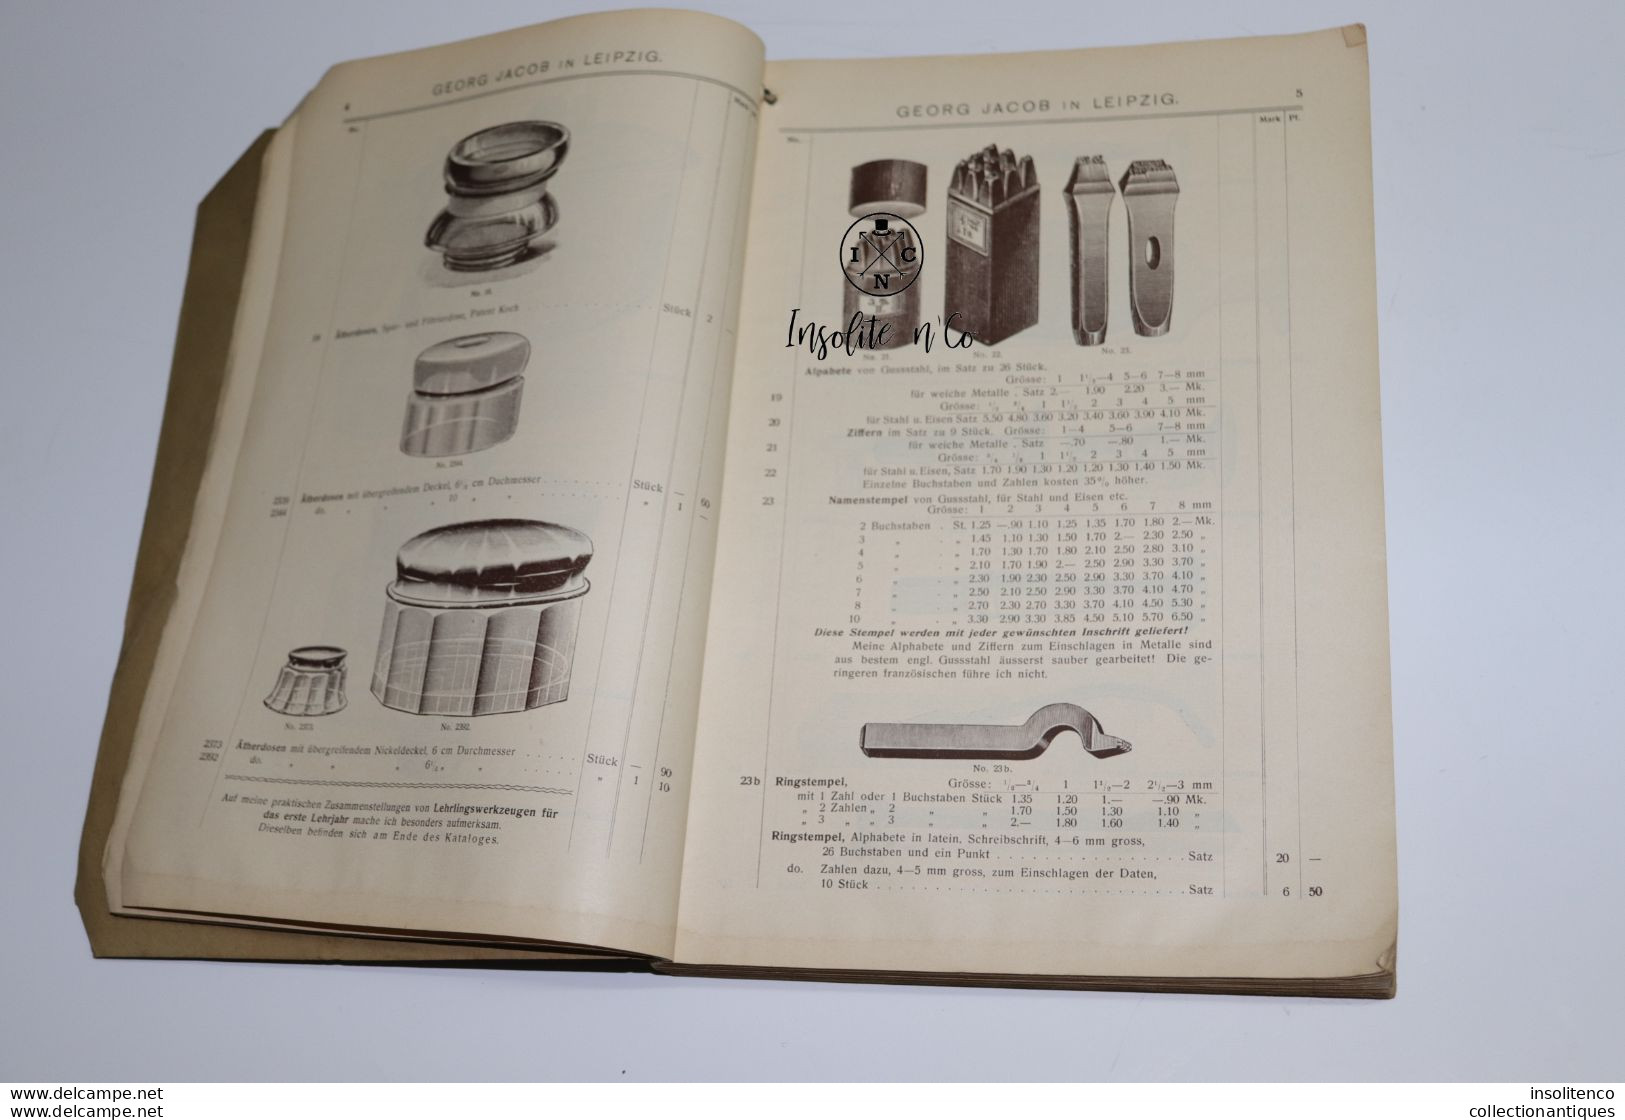 Horlogerie - Catalogue De Prix Pour Les Pièces Georg Jacob - 1904 - 592 Pages - Leipzig - Catálogos